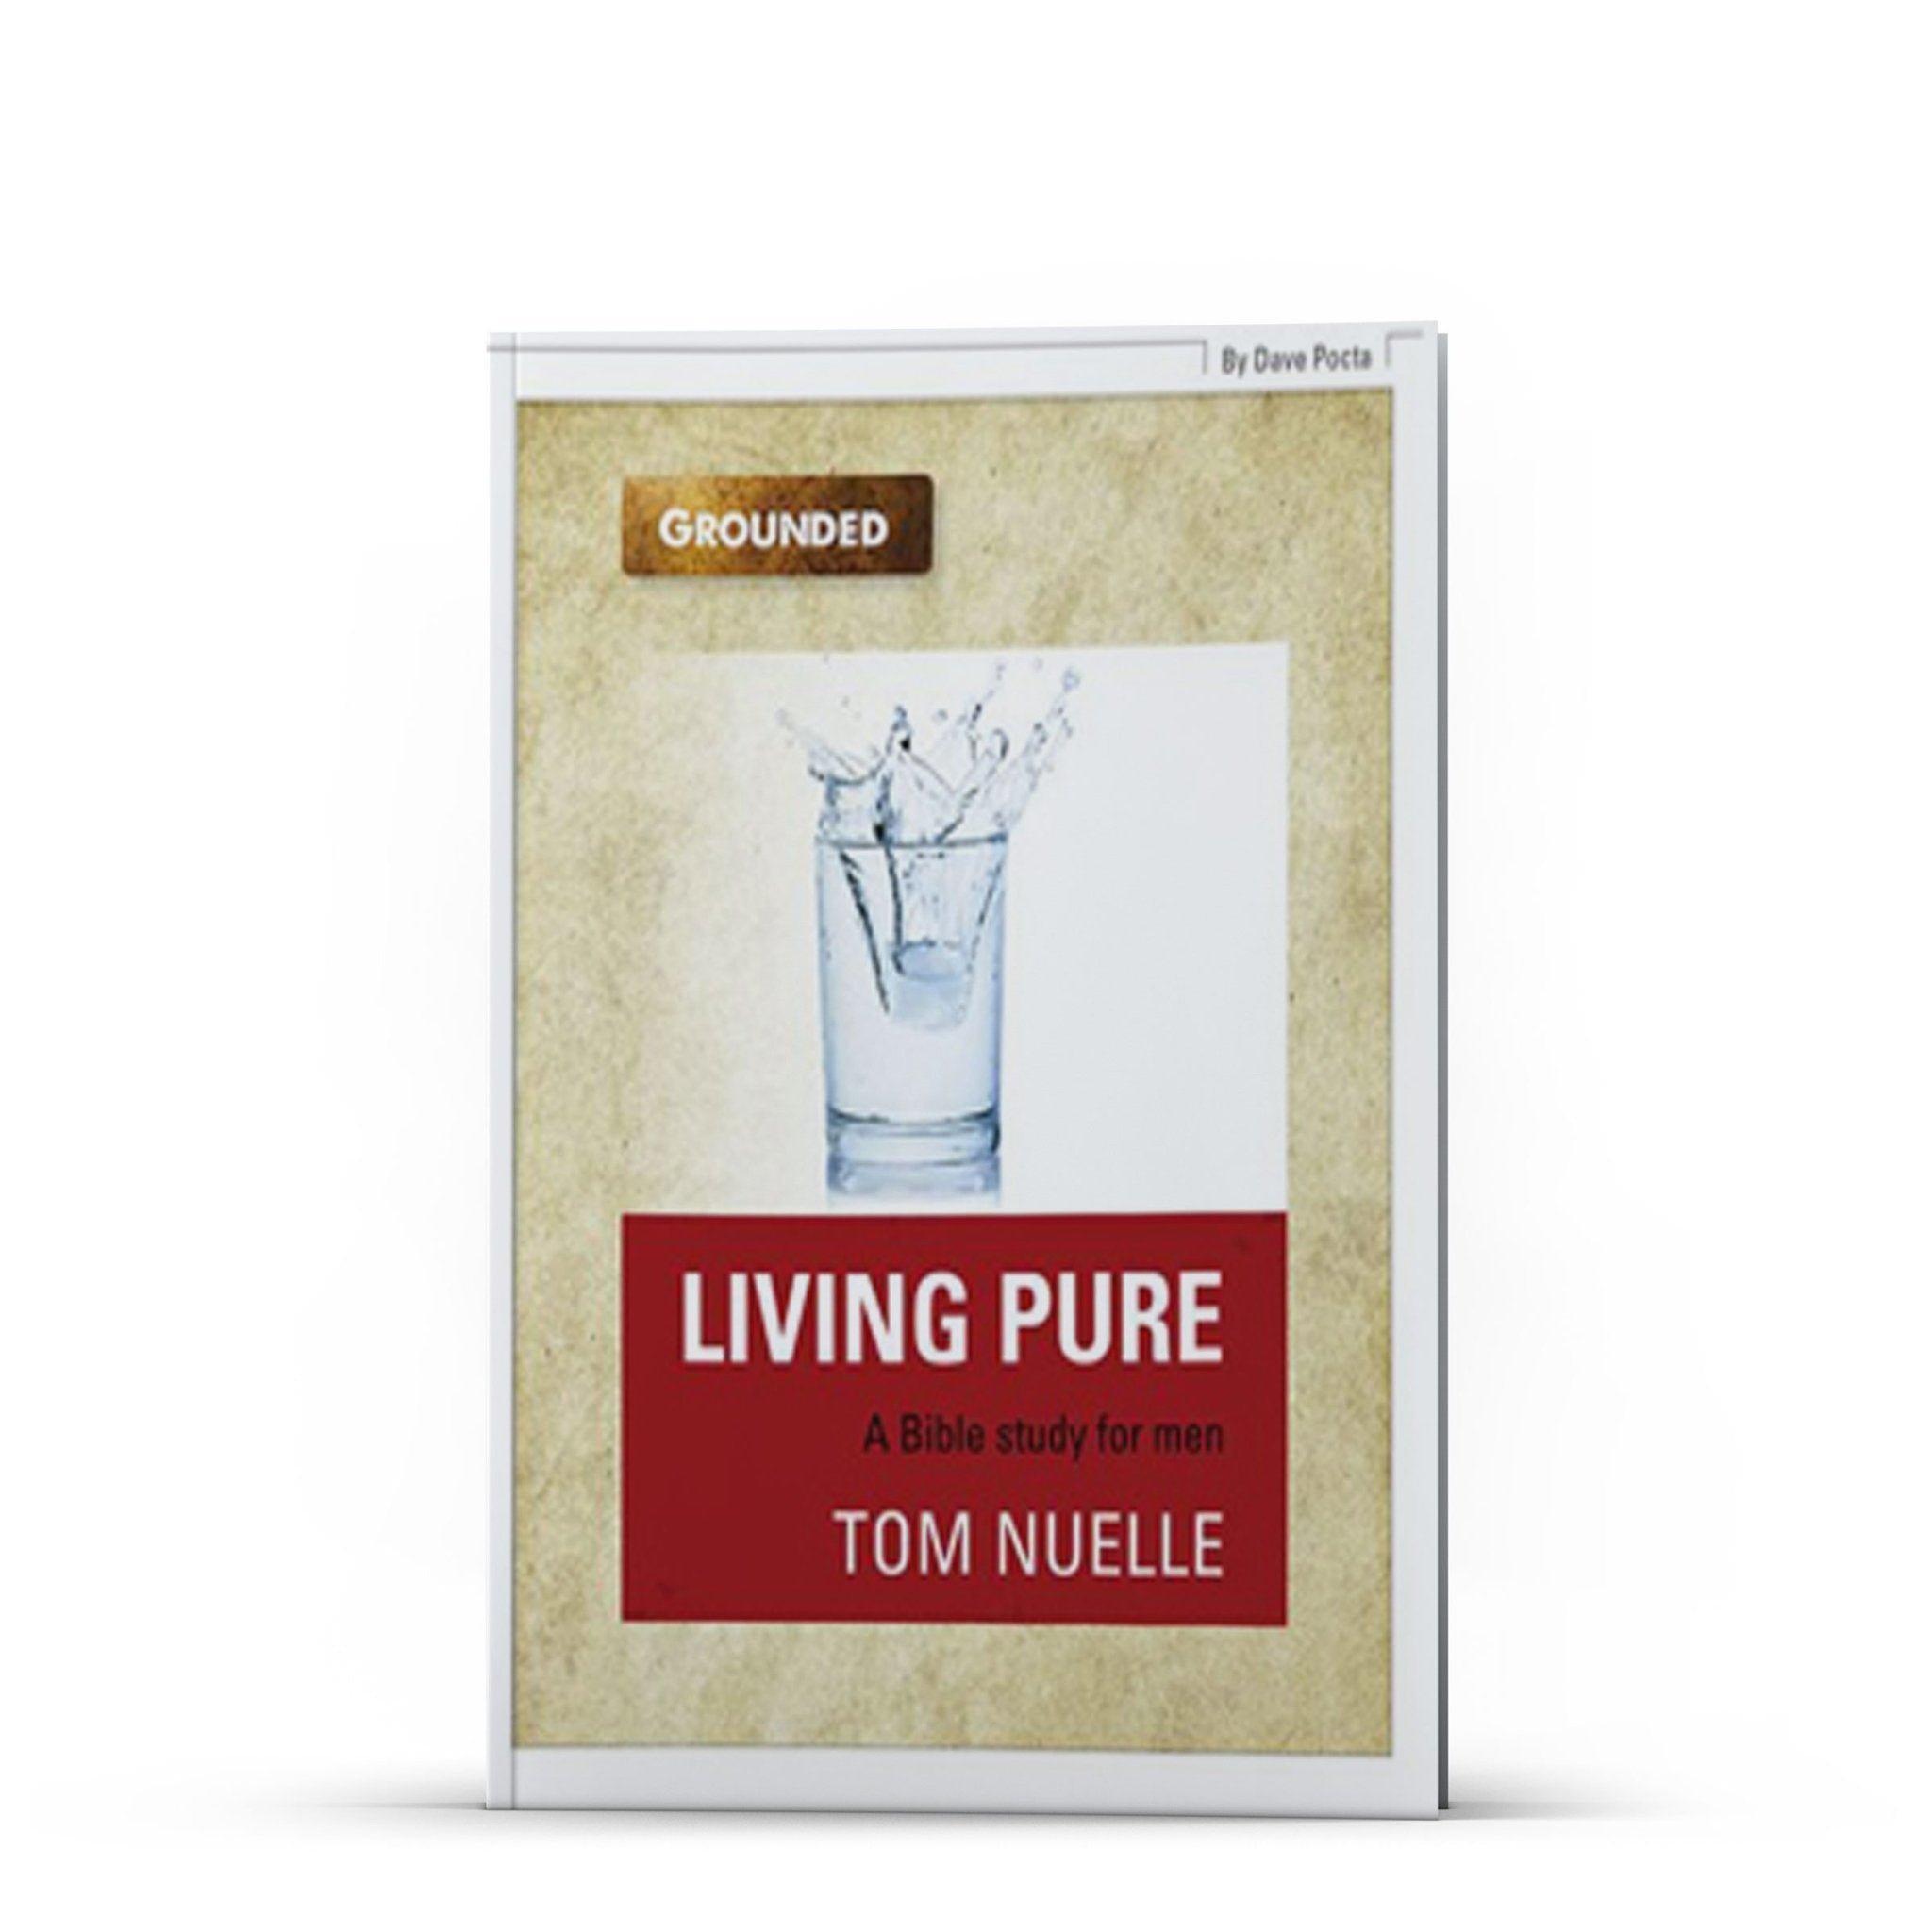 Living Pure - Illumination Publishers